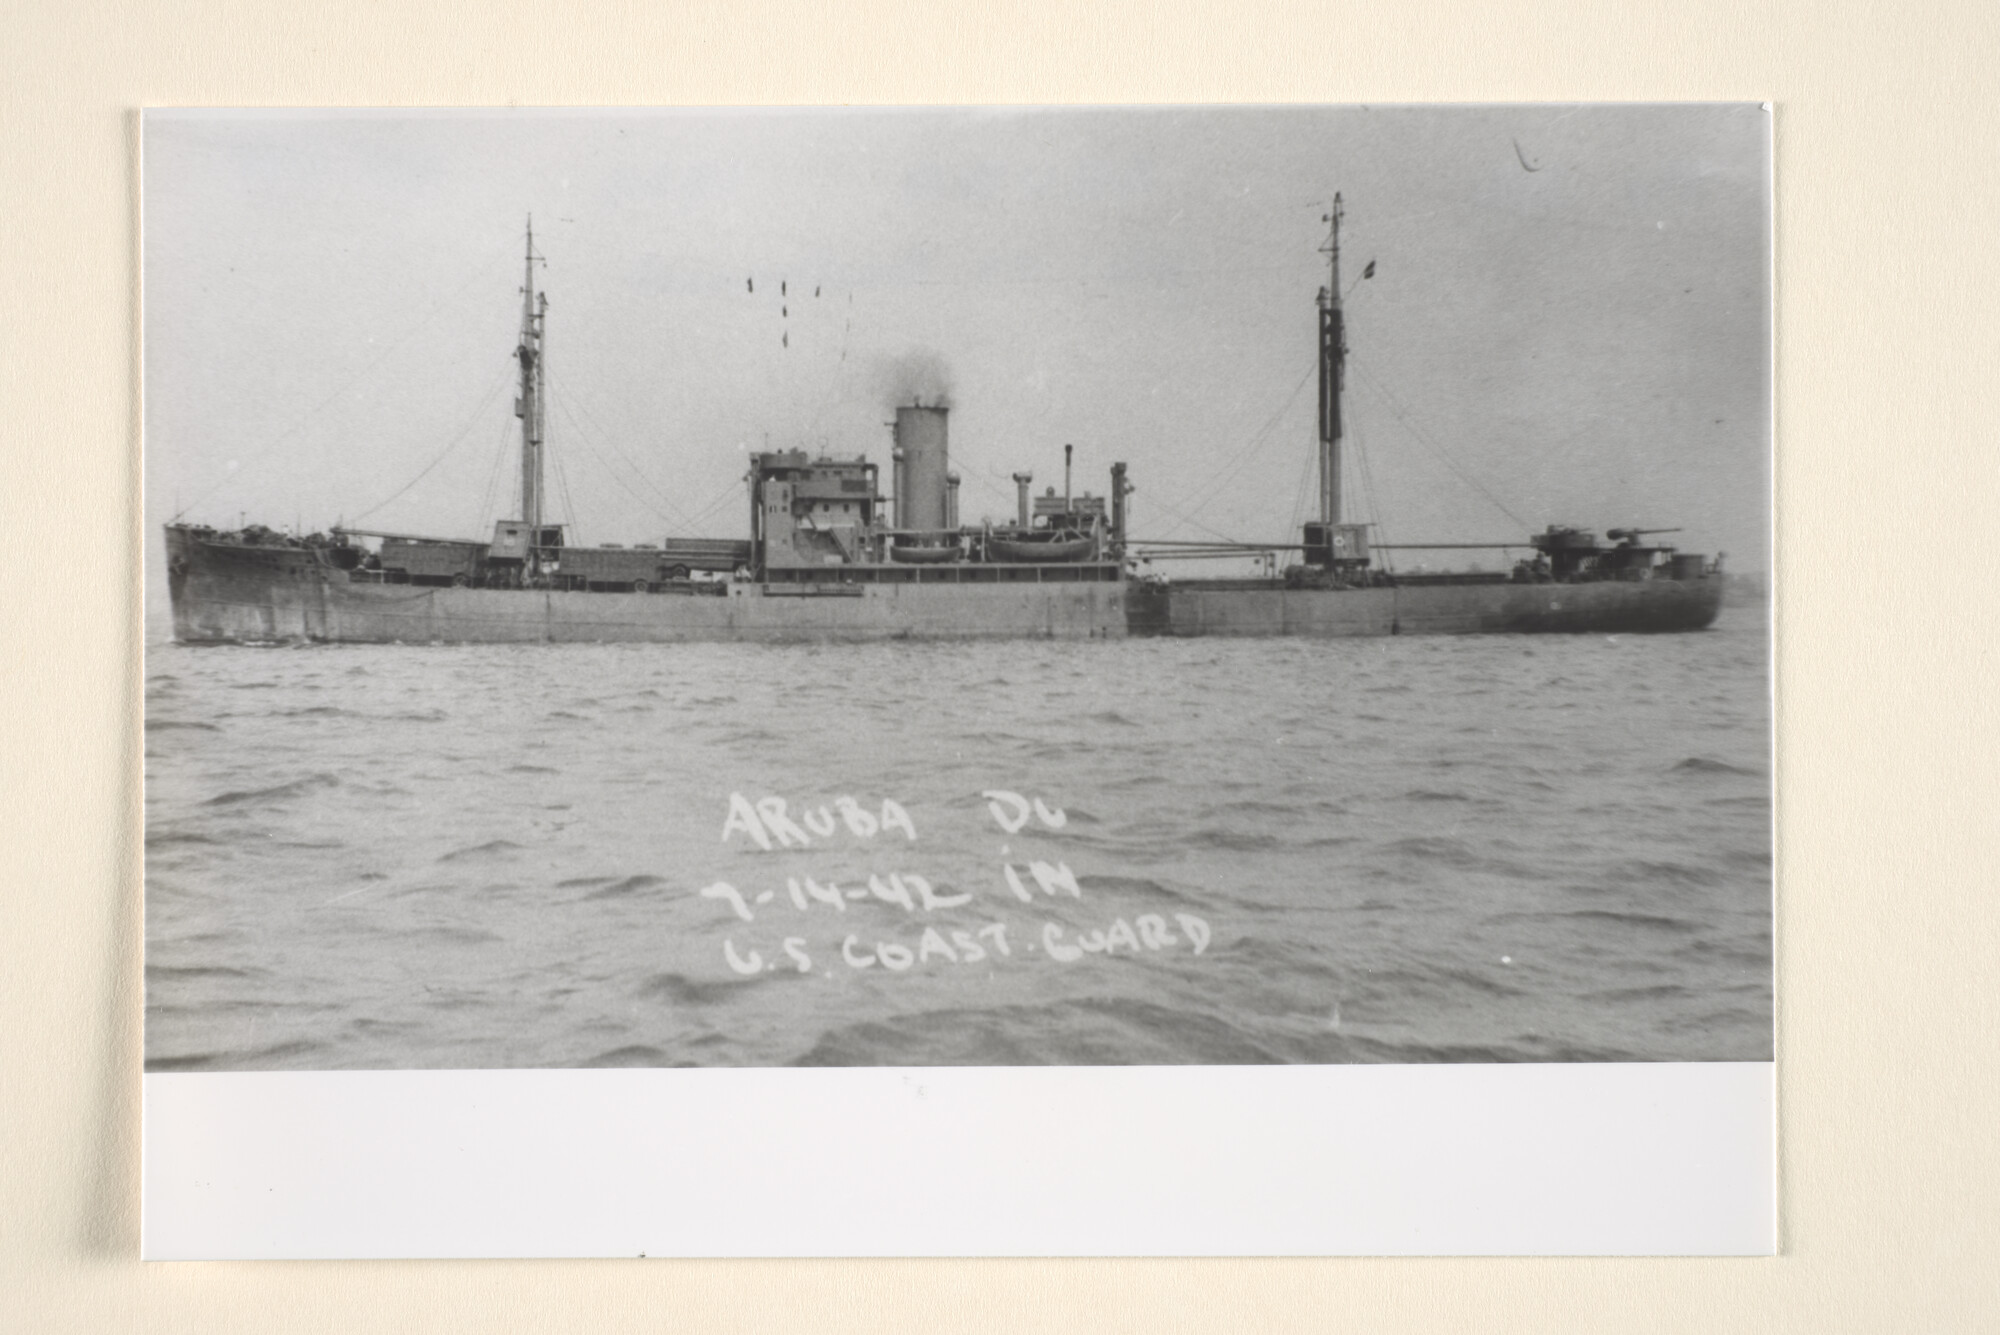 1995.6585; Het vrachtschip ms. Aruba van de KNSM in oorlogsgrijs op zee; foto